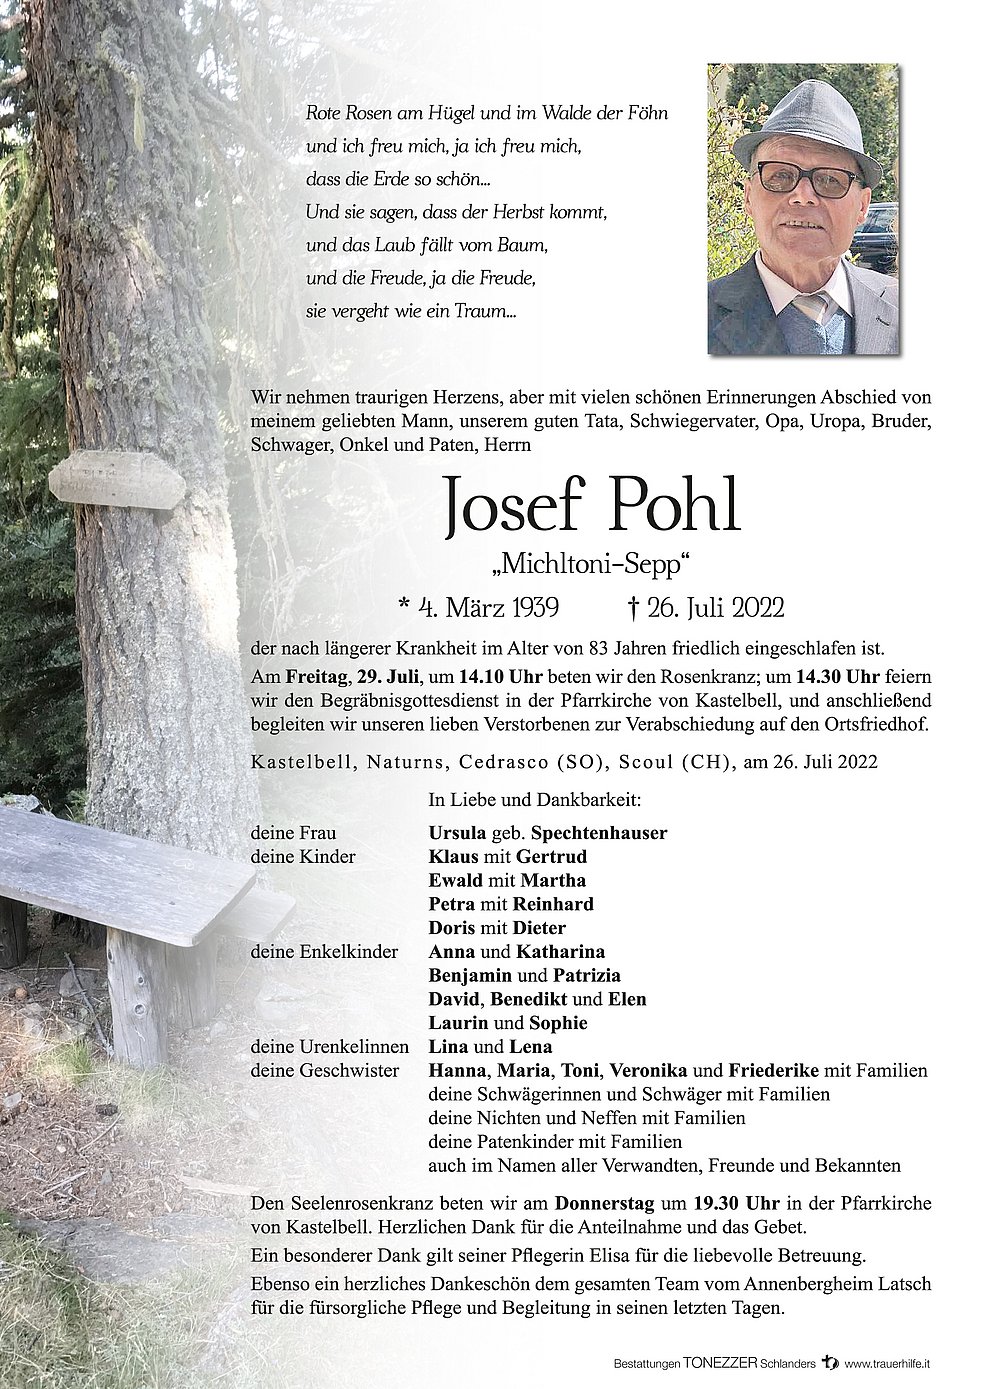 Josef Pohl Aus Kastelbell Tschars Trauerhilfeit Das Südtiroler Gedenkportal 